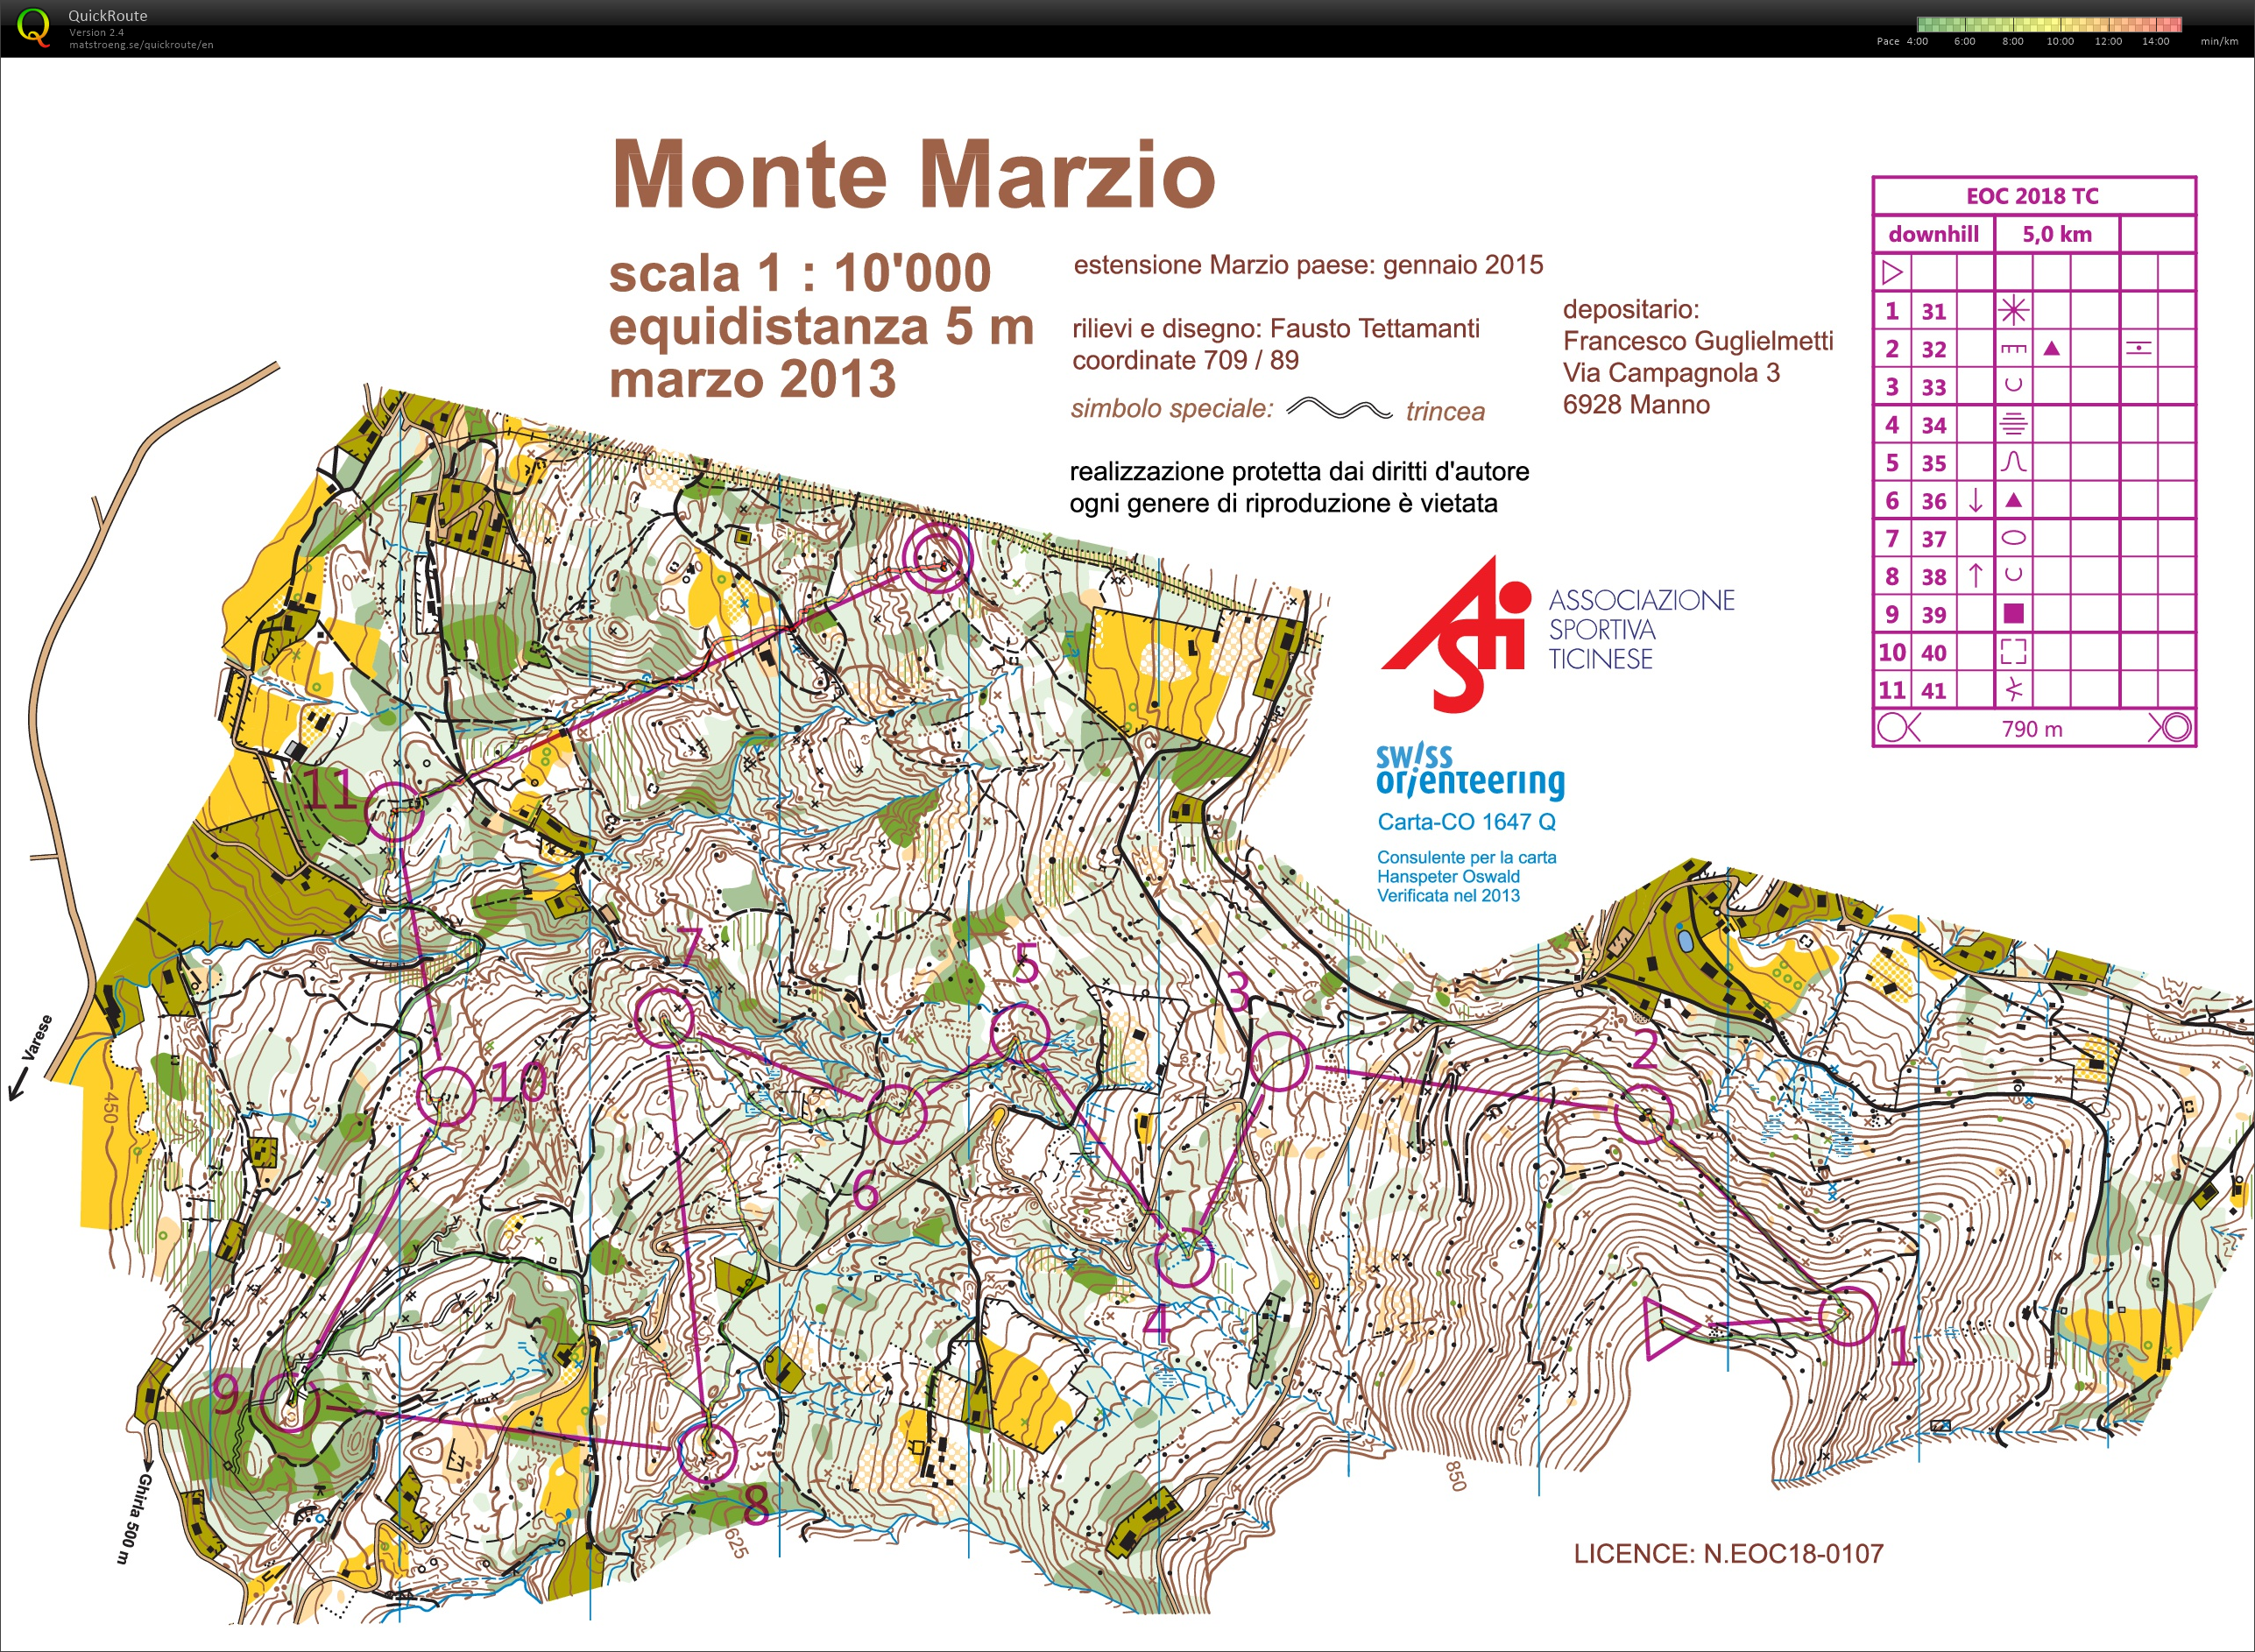 Monte Marzio Downhill EOC TL #2 (24.03.2018)